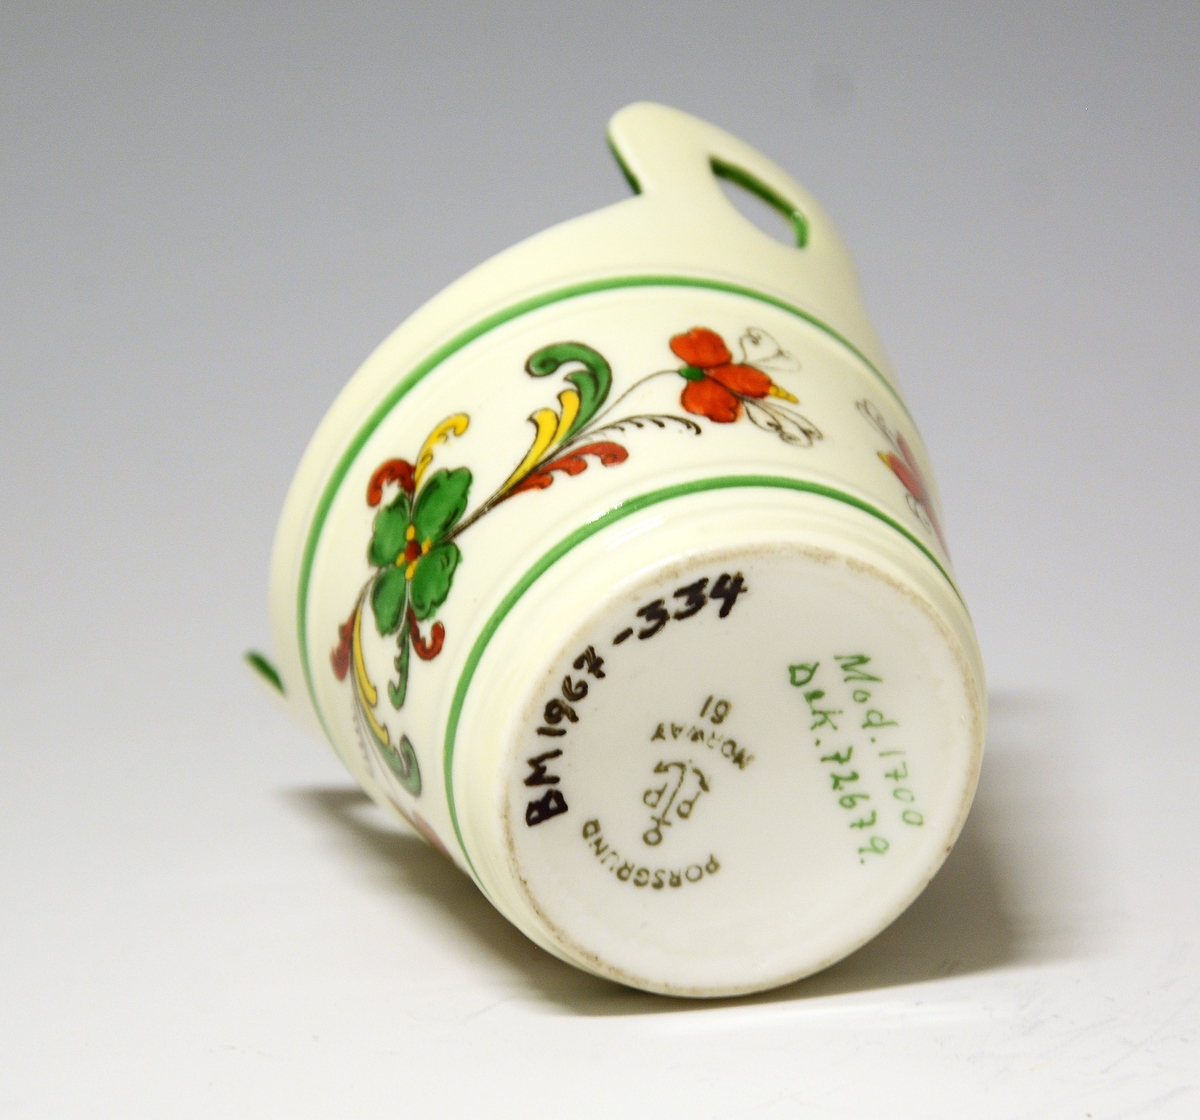 Liten kopp av porselen, formet som en smørstamp. Hvit glasur, også inni. På sidene rosemalt felt i sterke farger.
Modell: 1700
Dekor: 72679